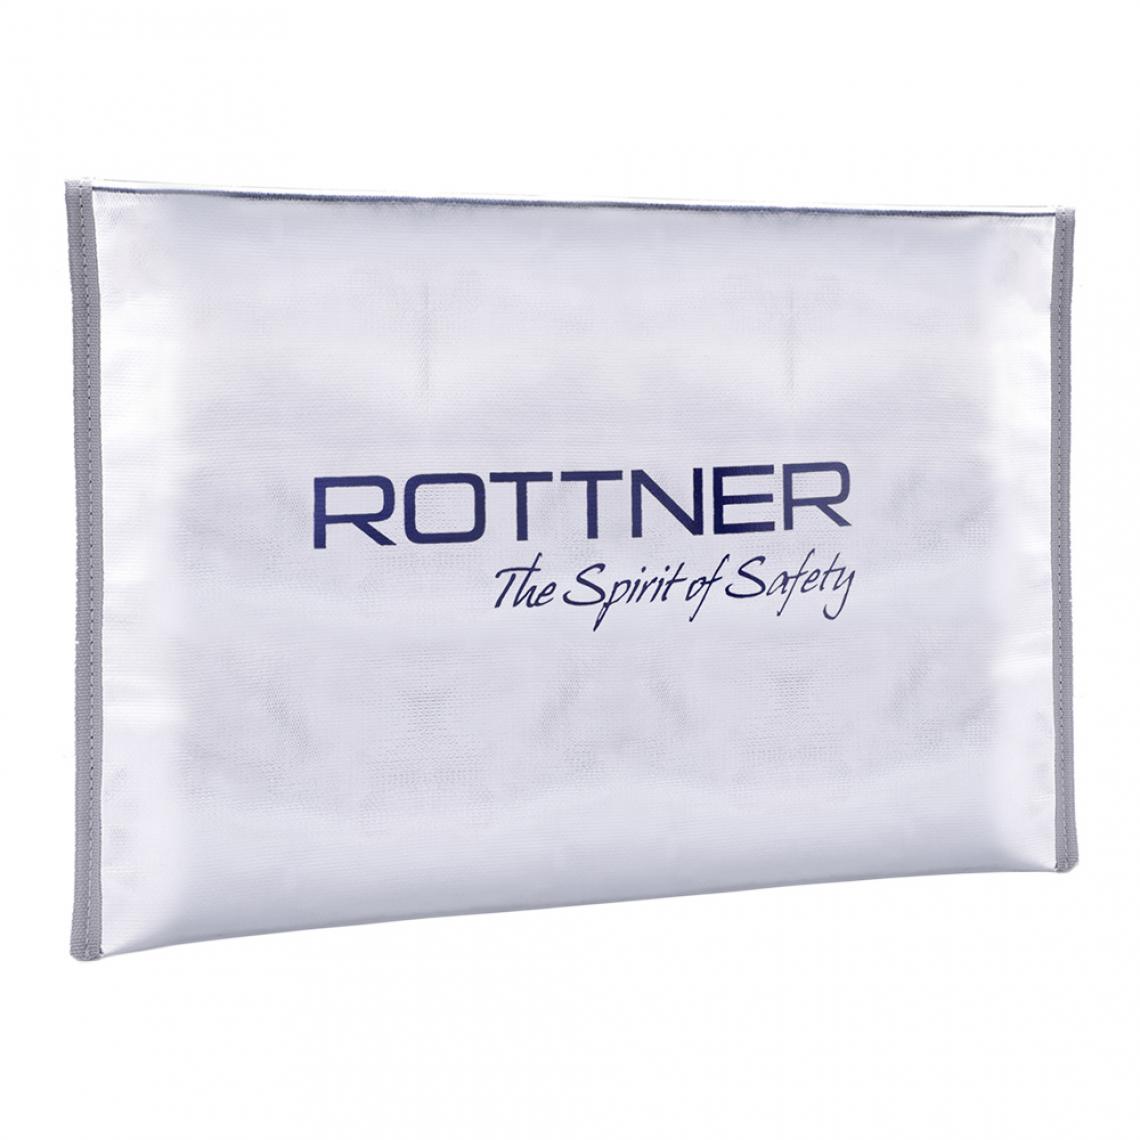 Rottner - Rottner Porte-documents ignifuge format A3 - Coffre fort